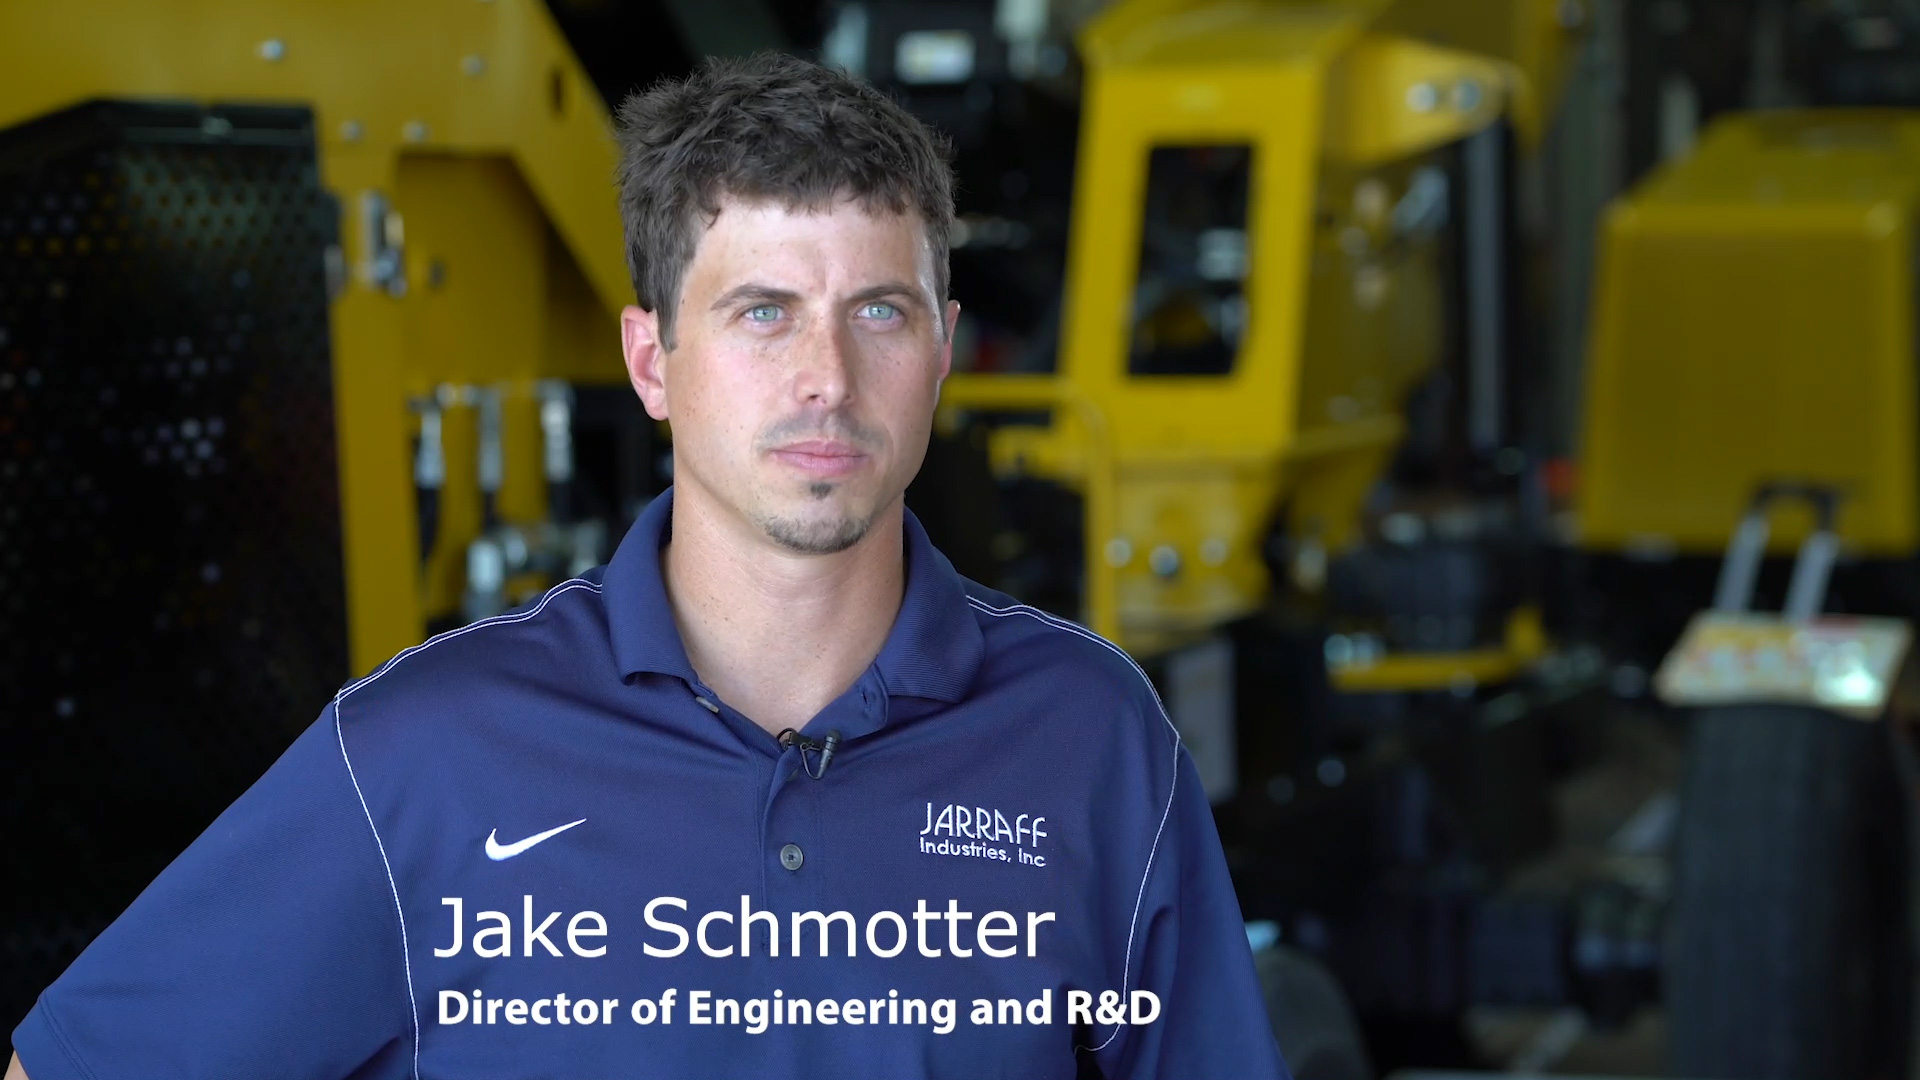 Jake Schmotter, directeur de l'ingénierie et de la R&D, Jarraff Industries.